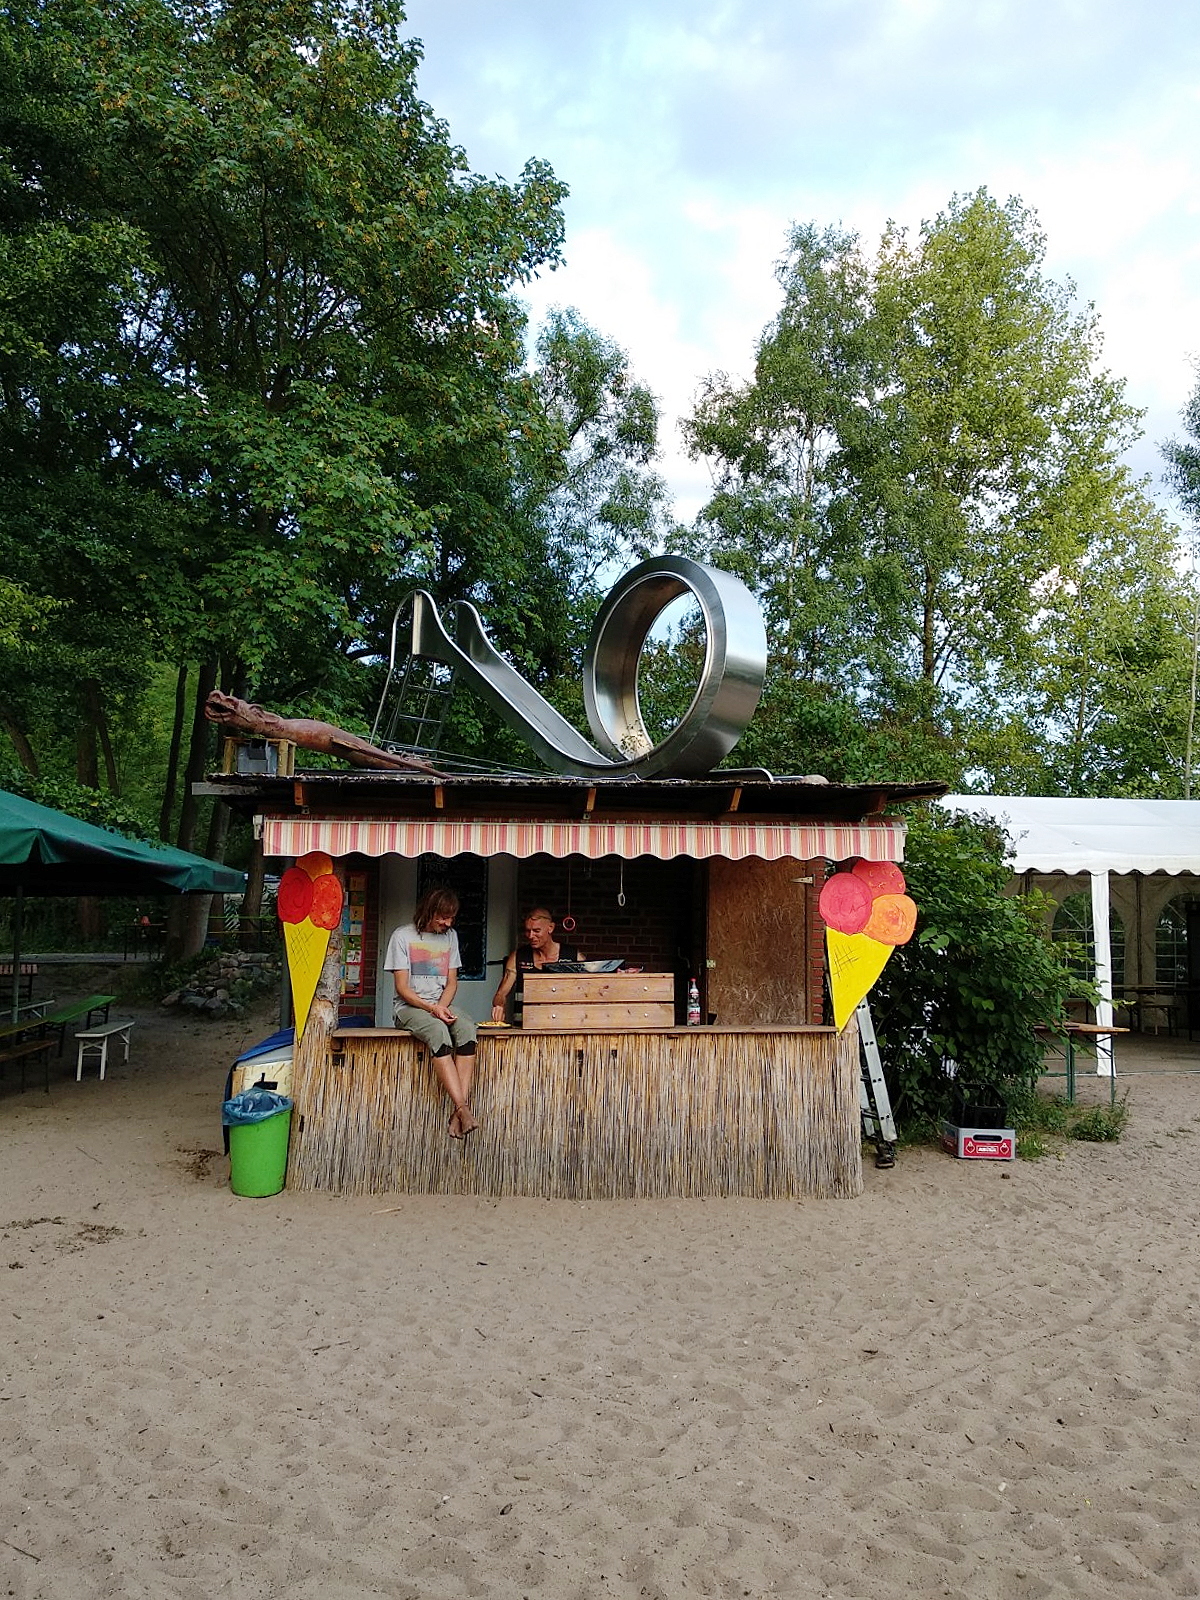 Camping mit Kind im ElbeCamp Hamburg | Auszeiten schaffen | judetta.de